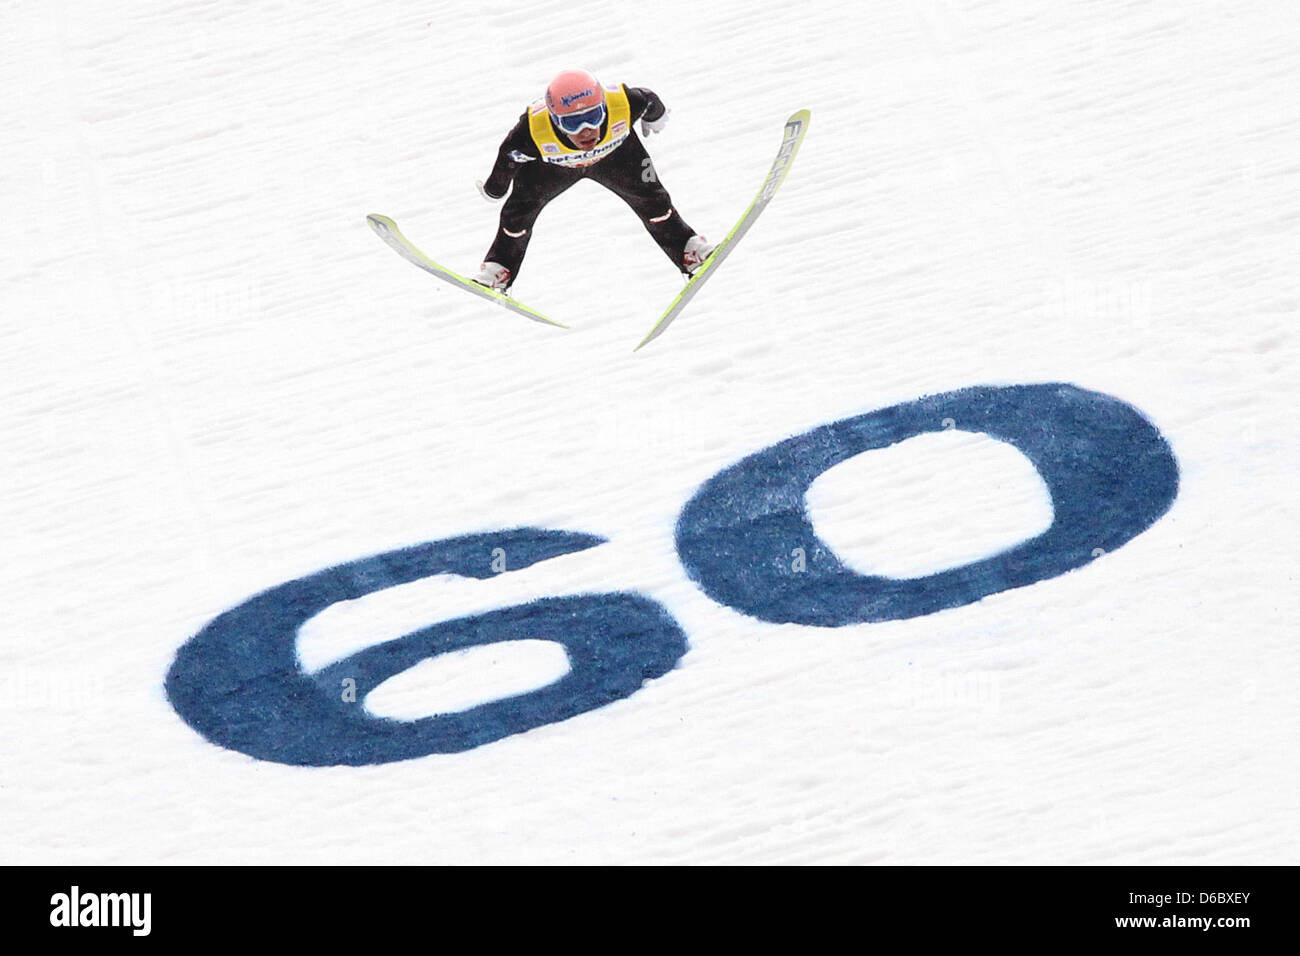 Österreichischer Skispringer springt Andreas Kofler während der Endrunde der dritte Sprung bei der 60. Vierschanzentournee in Innsbruck, Österreich, 4. Januar 2012. Kofler kam an erster Stelle. Foto: DANIEL KARMANN Stockfoto